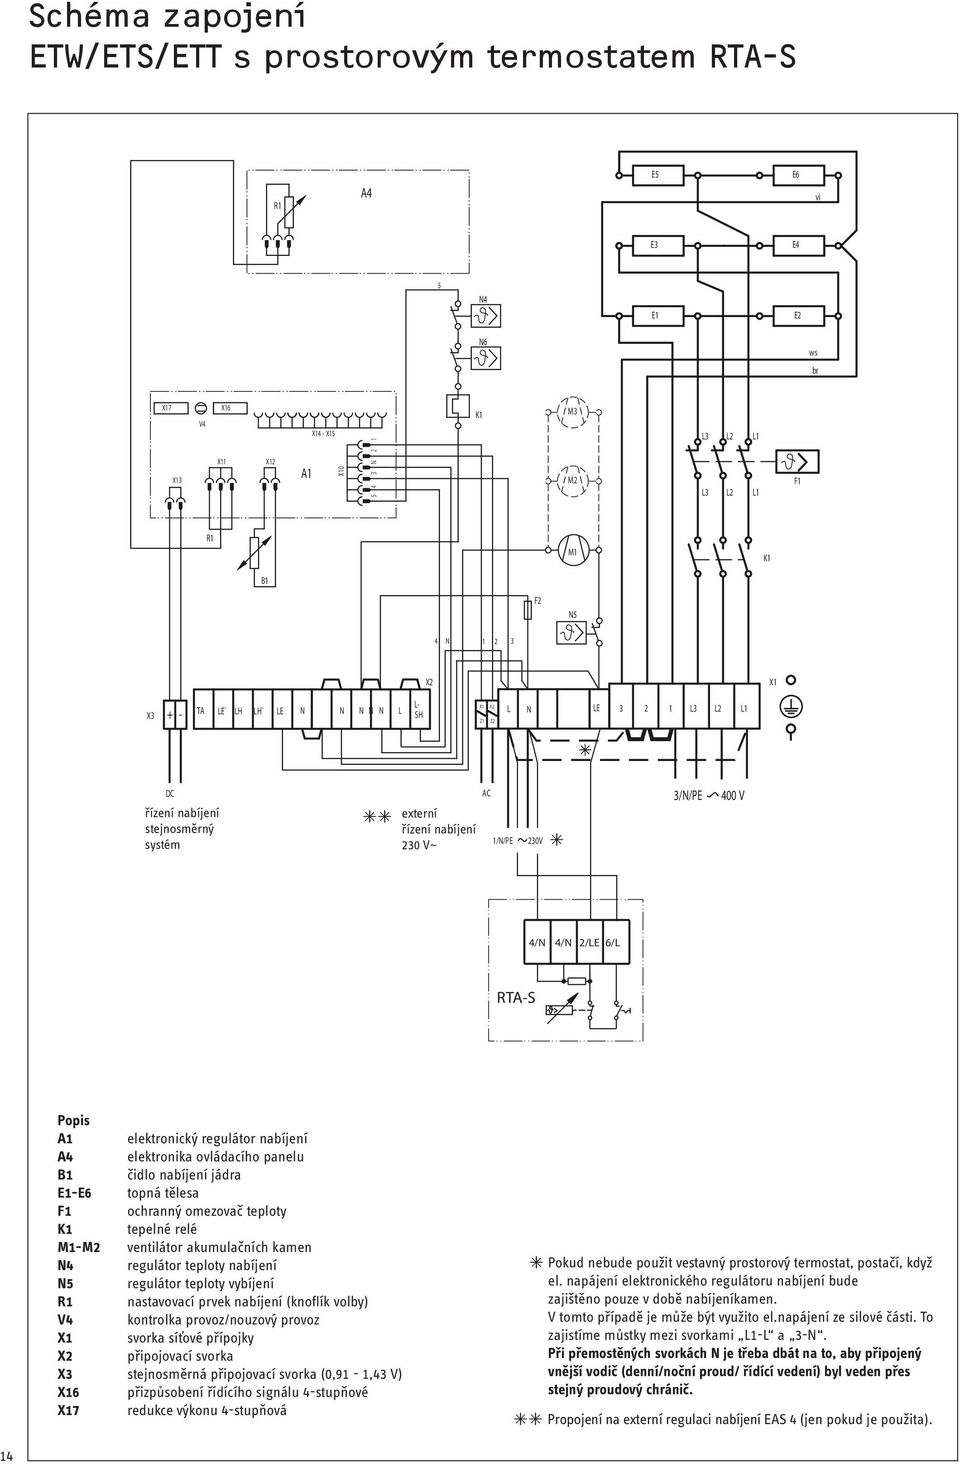 2/LE 6/L RTAS Popis A1 elektronický regulátor nabíjení A4 elektronika ovládacího panelu B1 čidlo nabíjení jádra E1E6 topná tělesa F1 ochranný omezovač teploty K1 tepelné relé M1M2 ventilátor